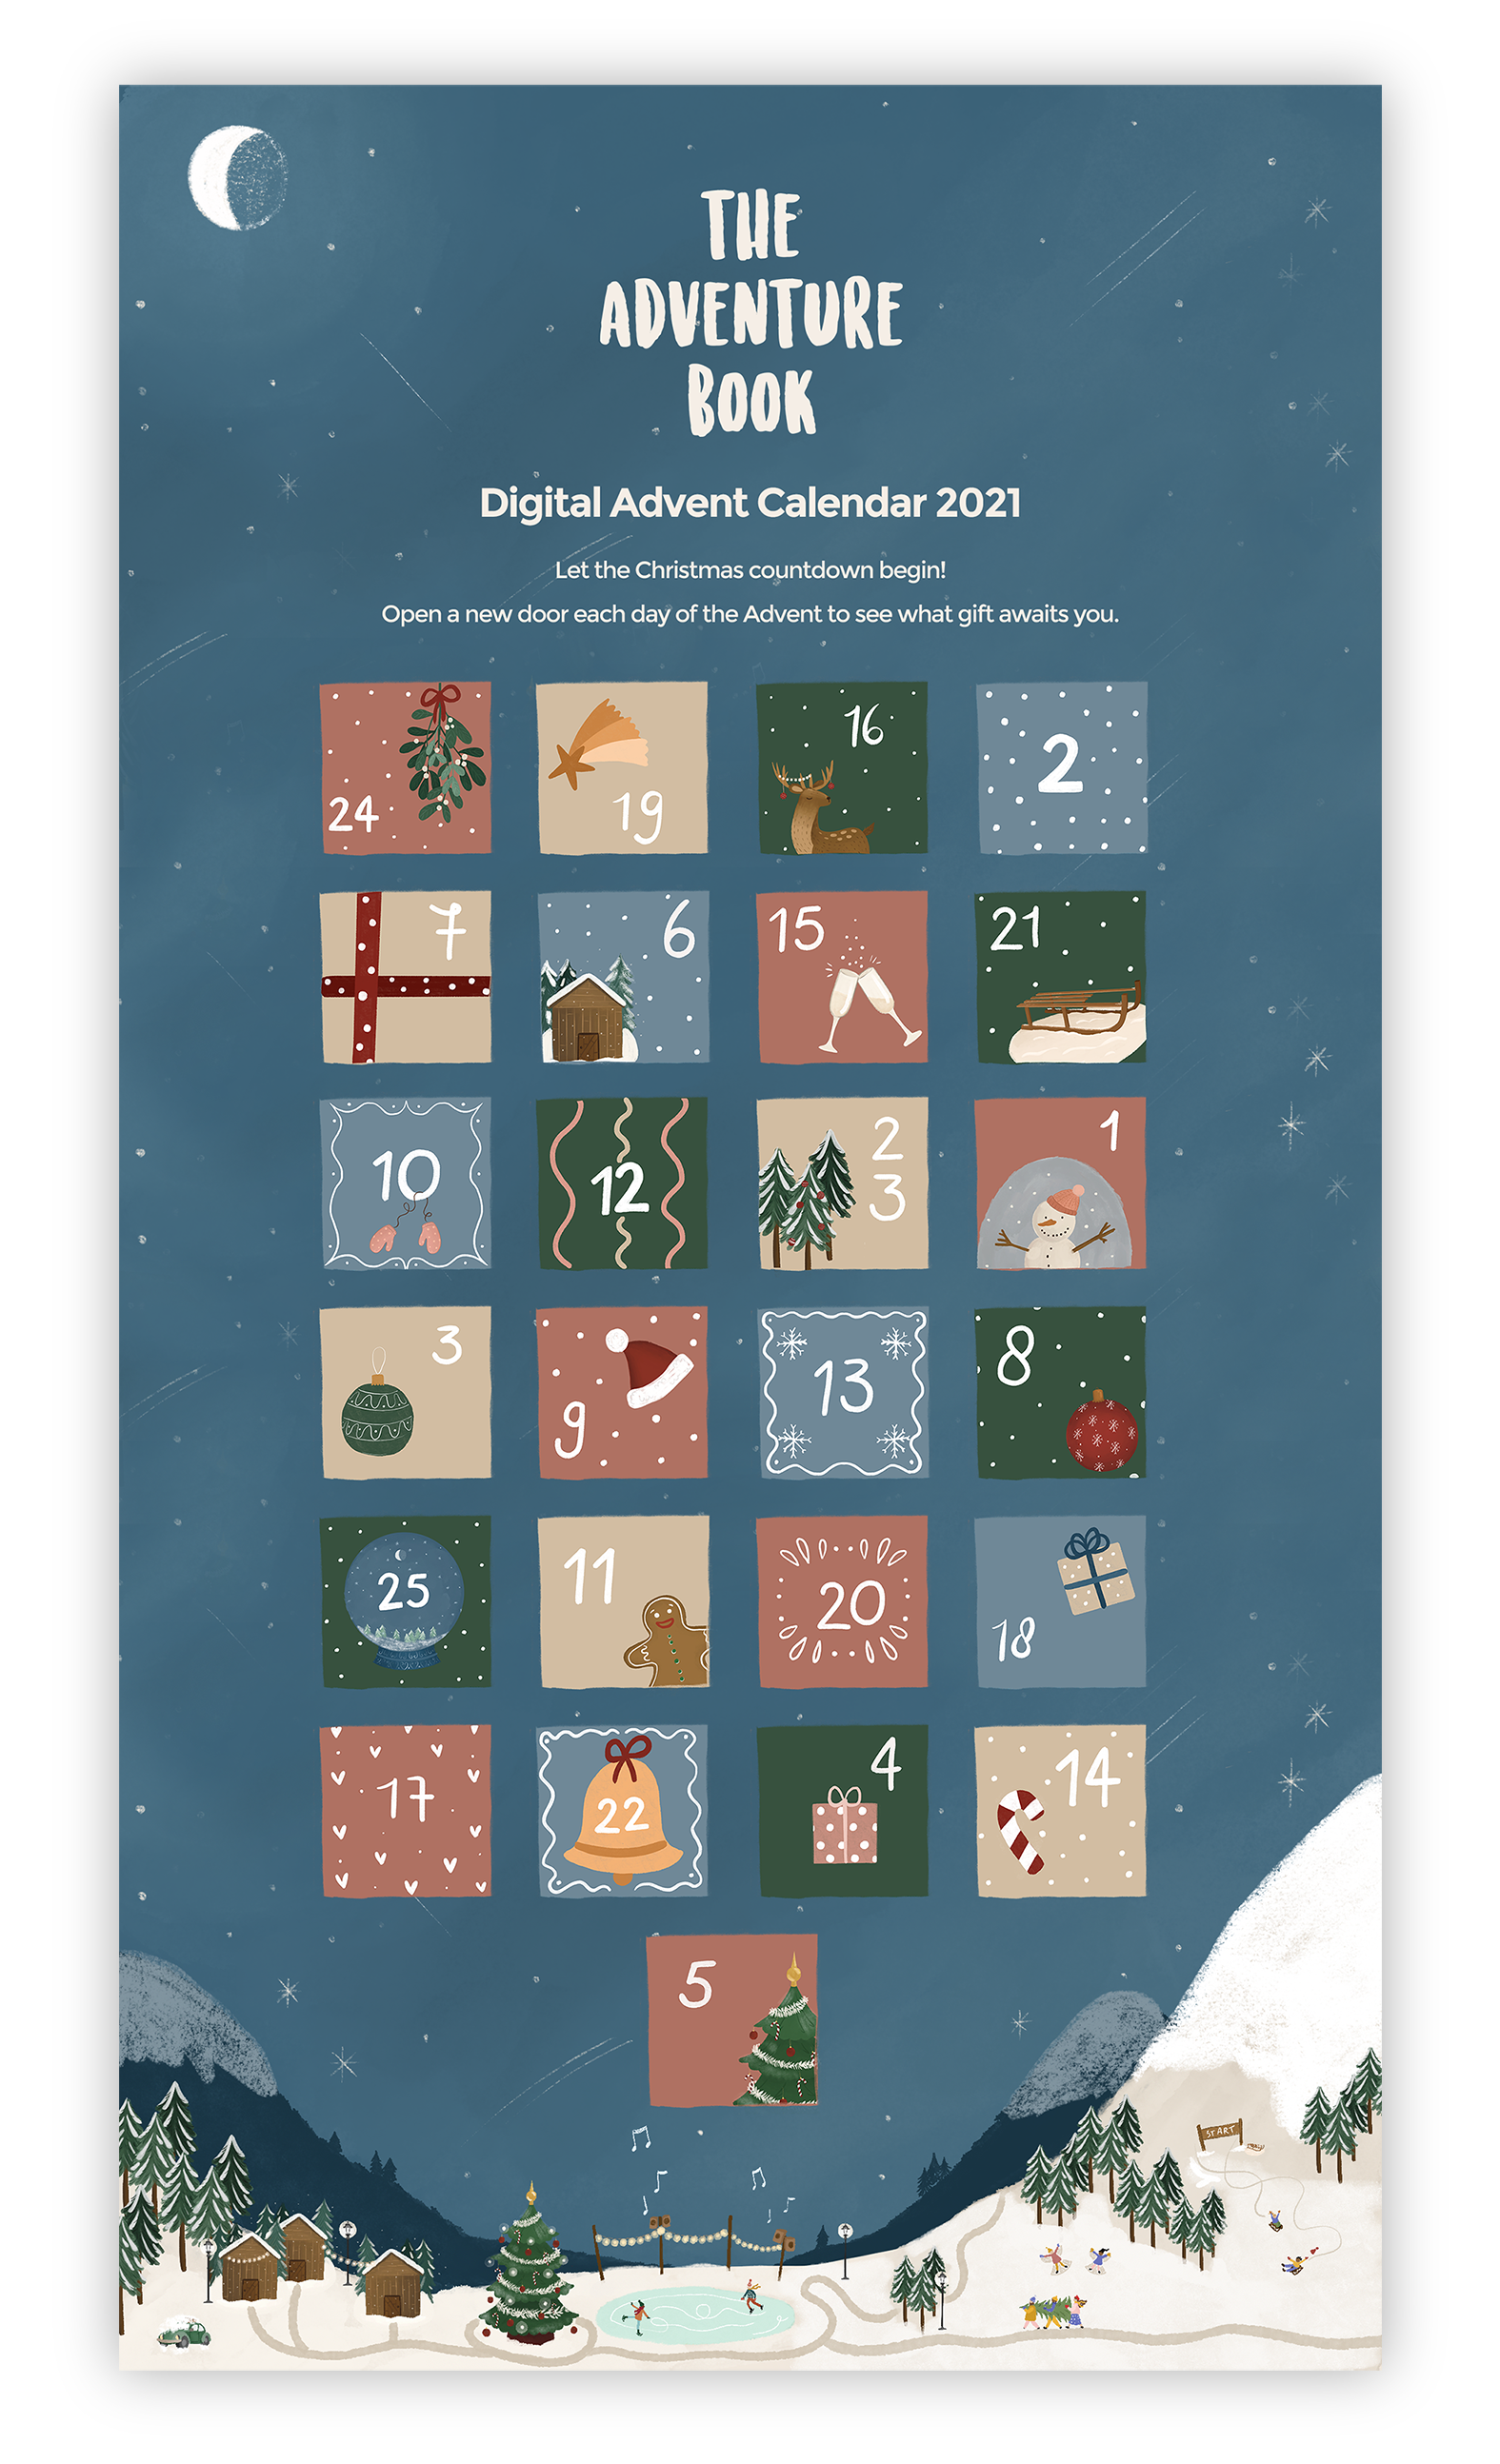 Digital Advent Calendar 2021 - Available Worldwide